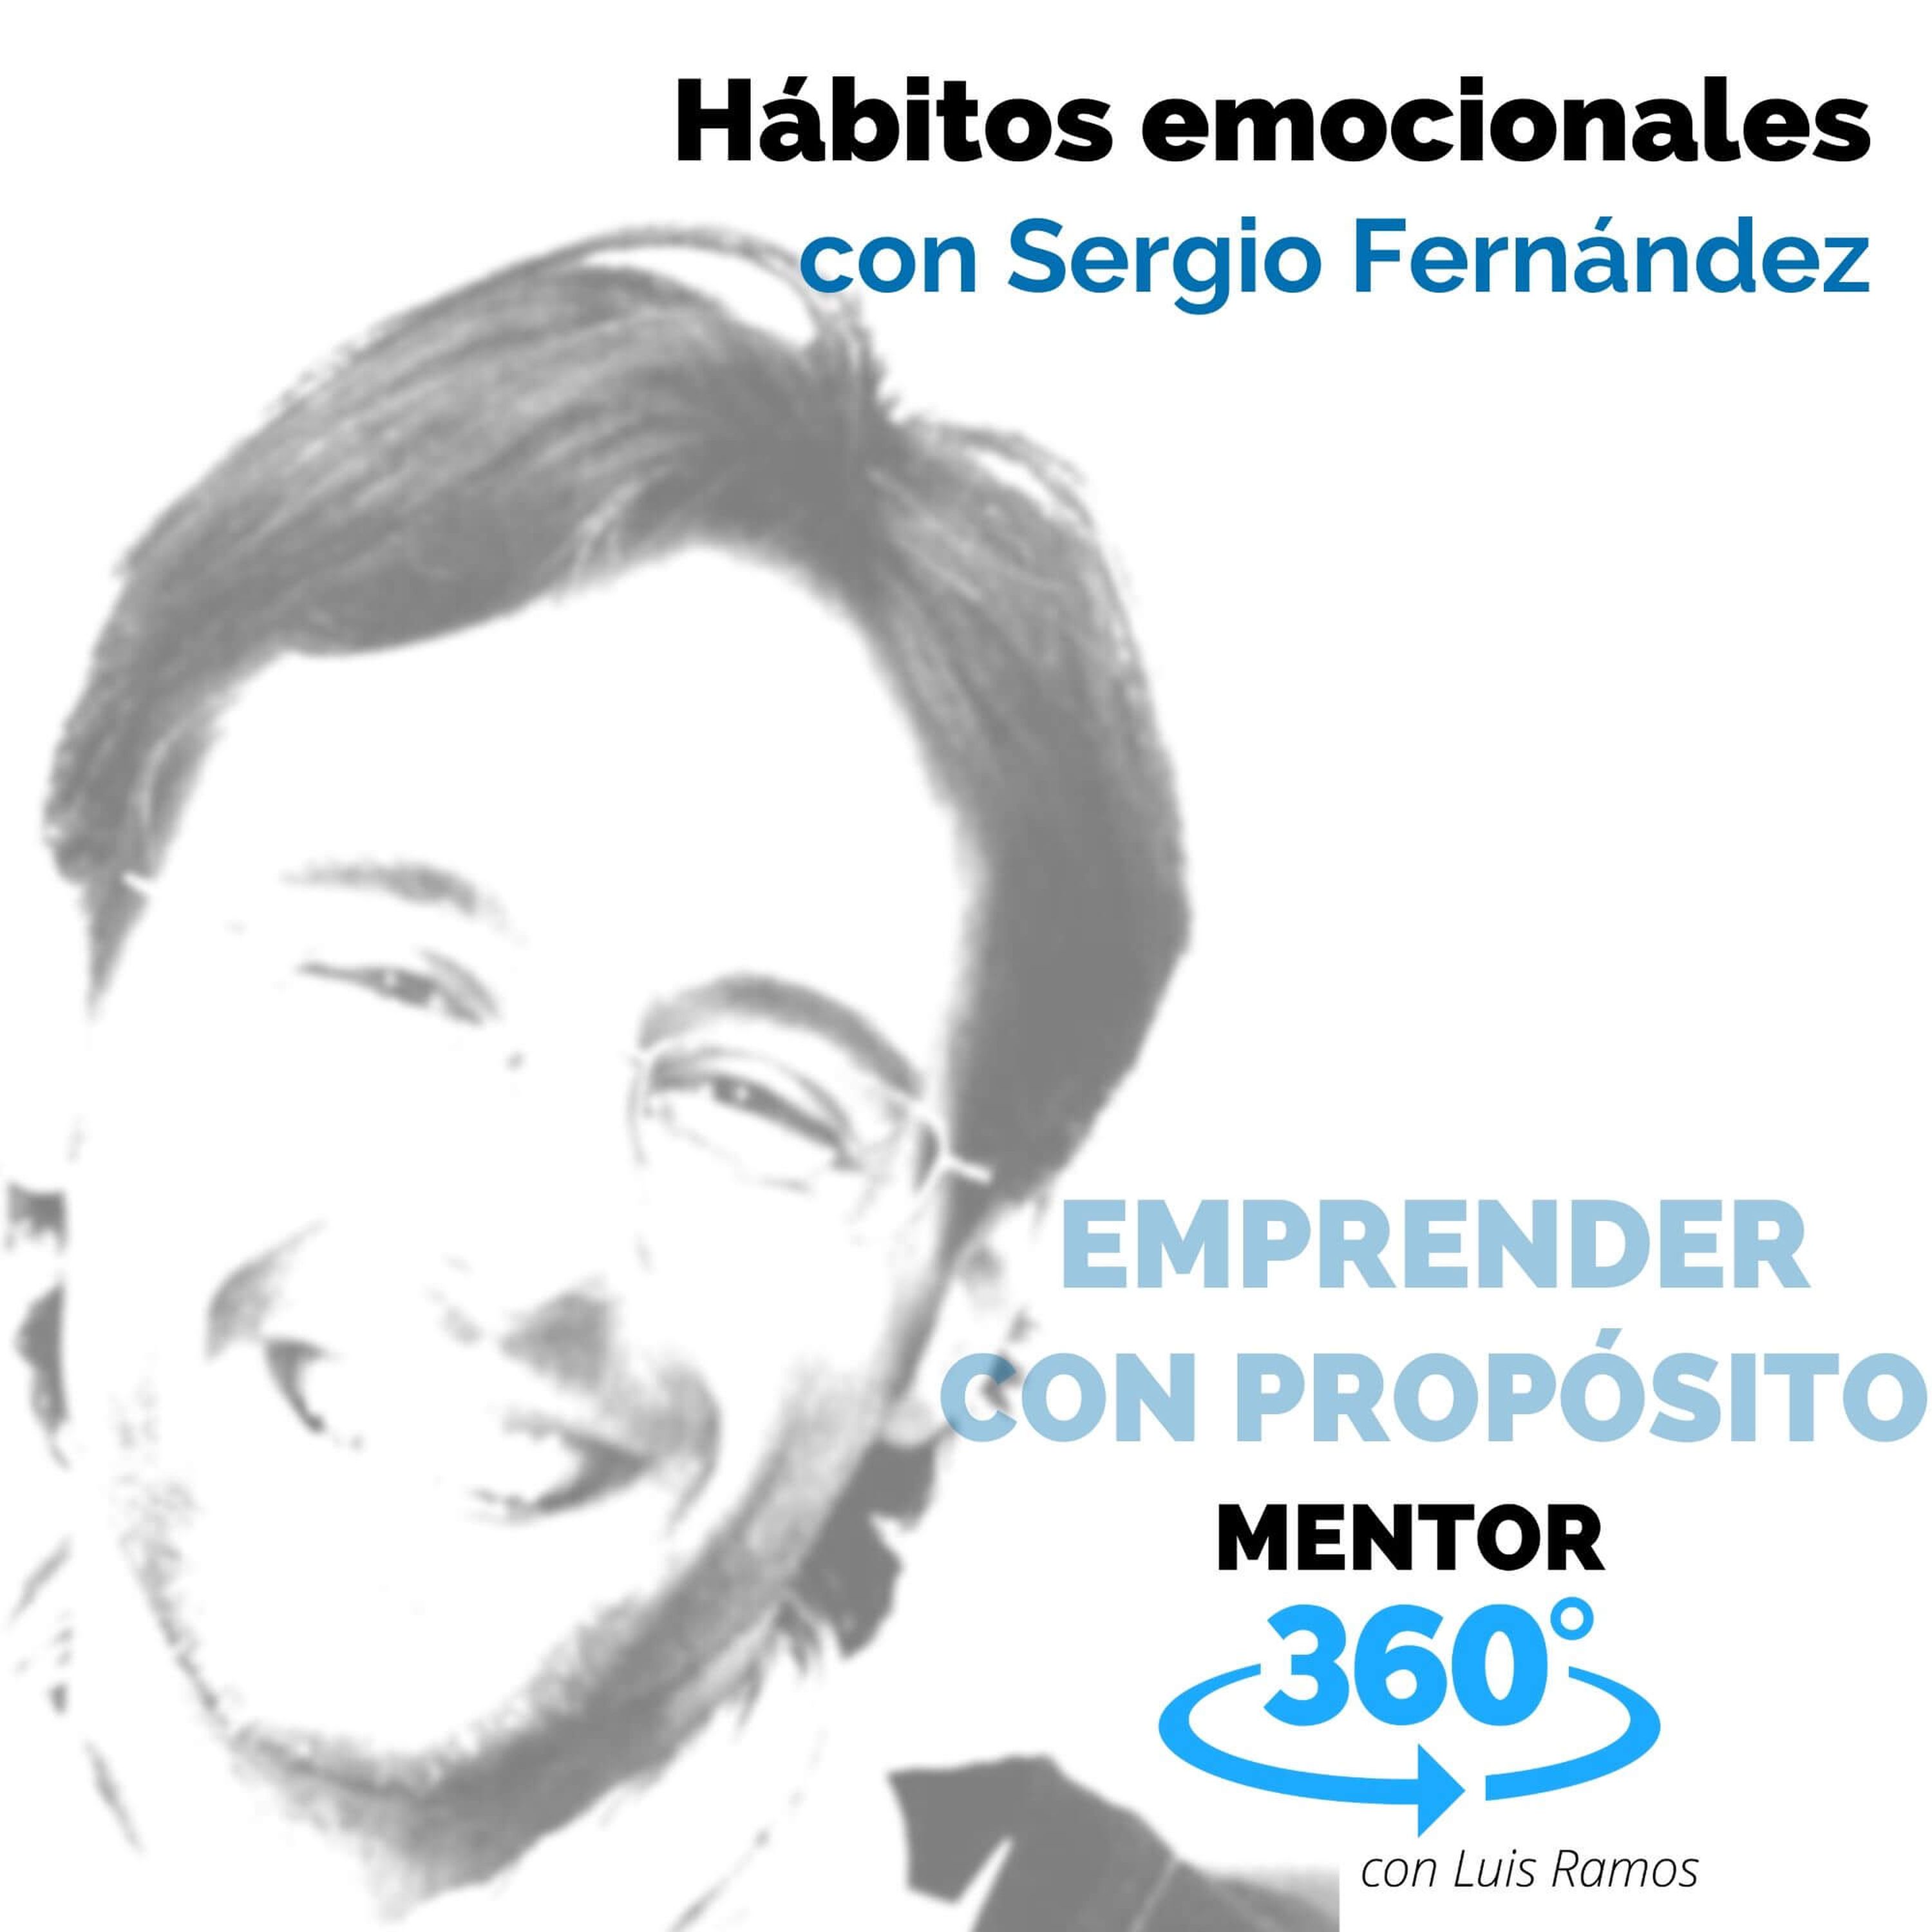 Hábitos emocionales, con Sergio Fernández - EMPRENDER CON PROPÓSITO